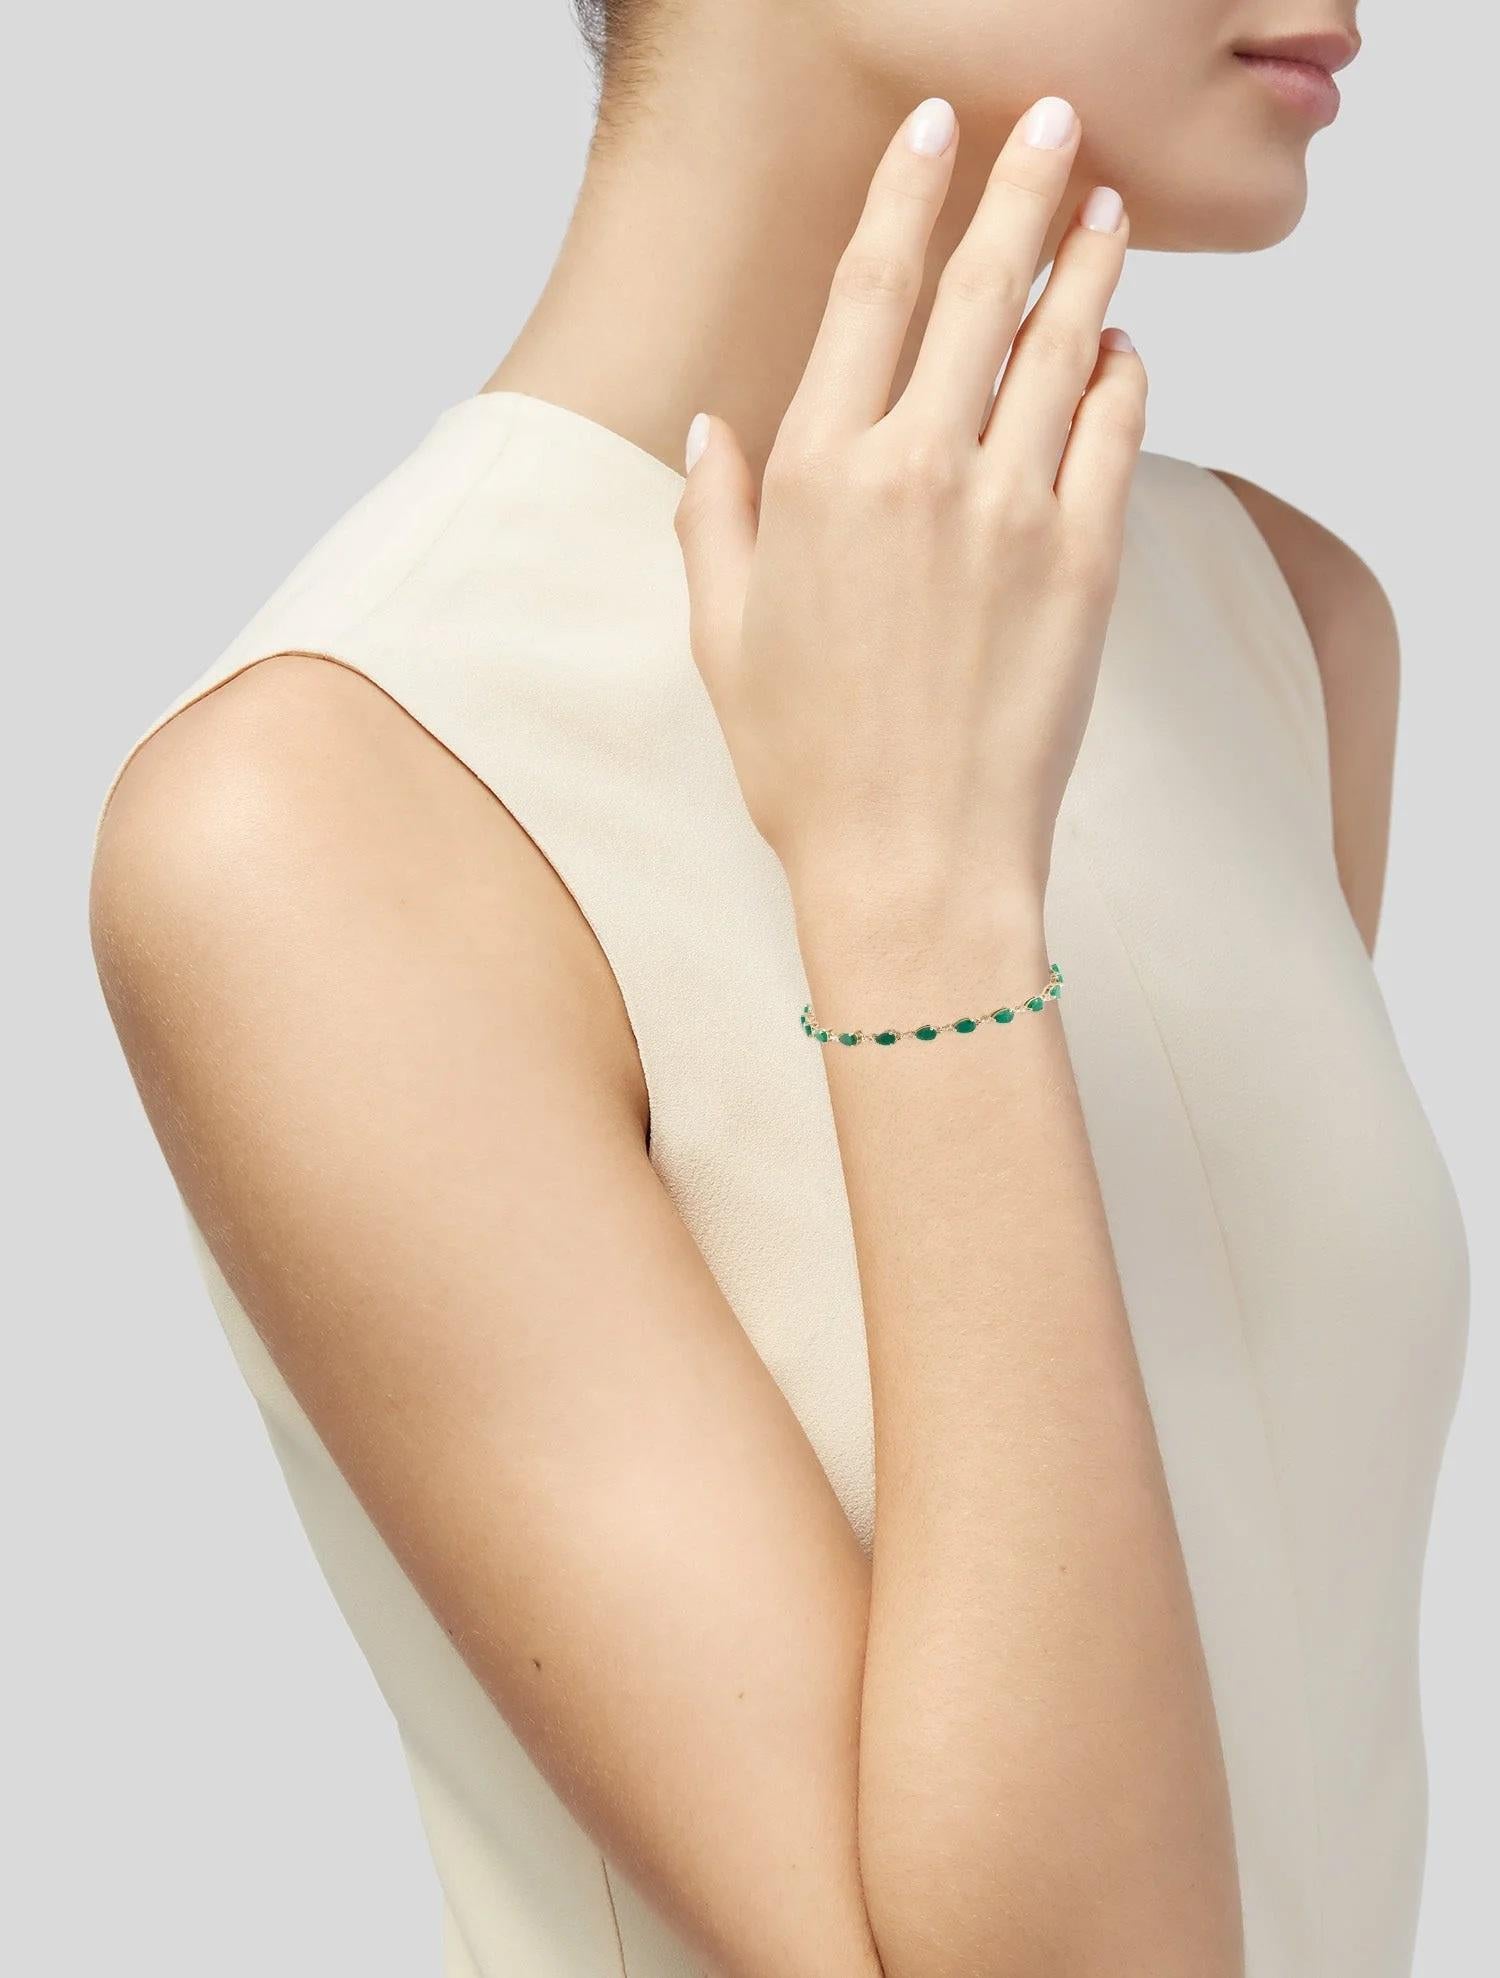 Erhöhen Sie Ihren Stil mit diesem atemberaubenden Armband aus 14 Karat Gelbgold mit einem fesselnden 3,51 Karat Birnenbrillant-Smaragd und 20 funkelnden Diamanten im Einzelschliff von insgesamt 0,08 Karat. Der leuchtende Grünton des Smaragds steht